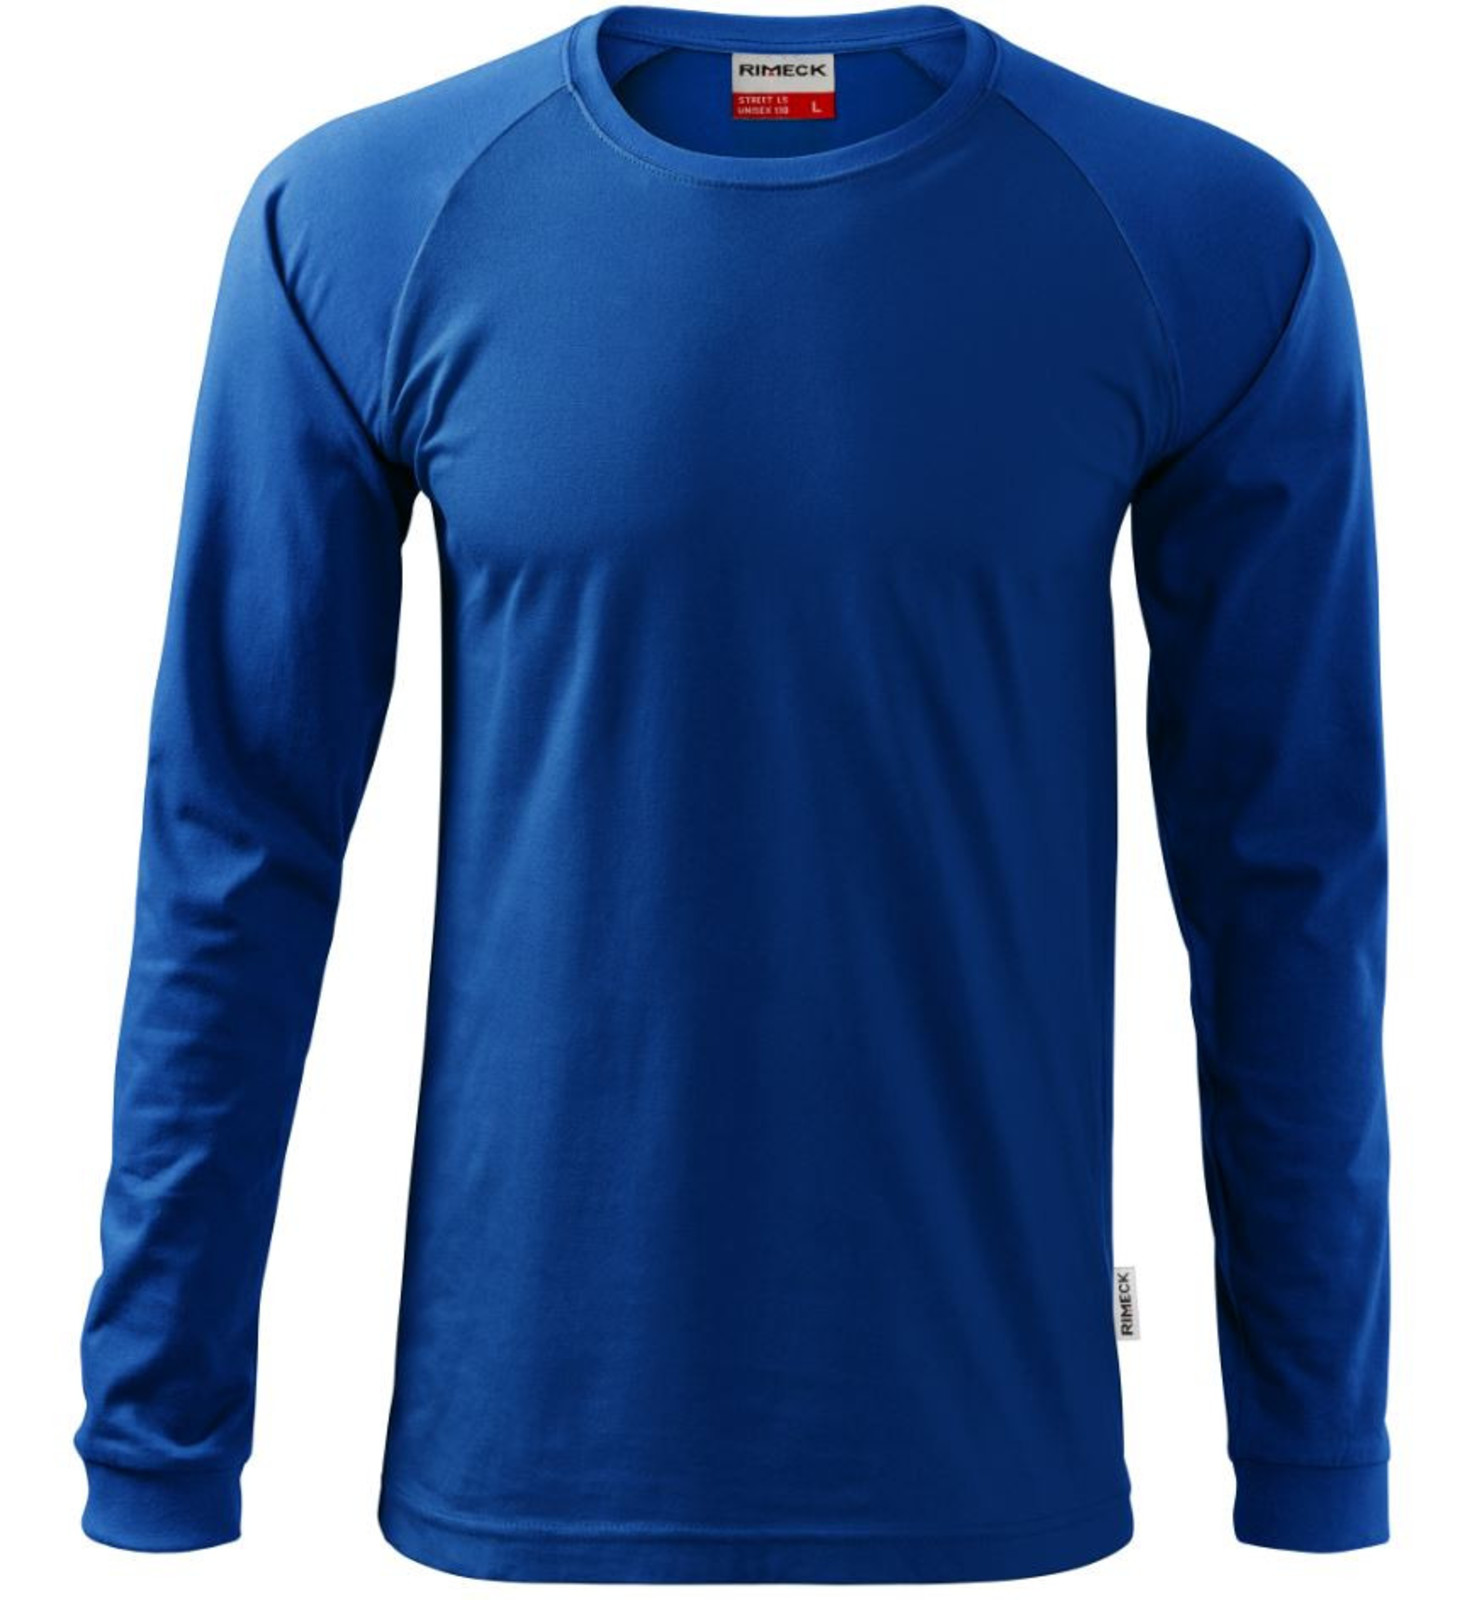 Unisex tričko s dlhým rukávom Rimeck Street LS 130 - veľkosť: 3XL, farba: kráľovská modrá